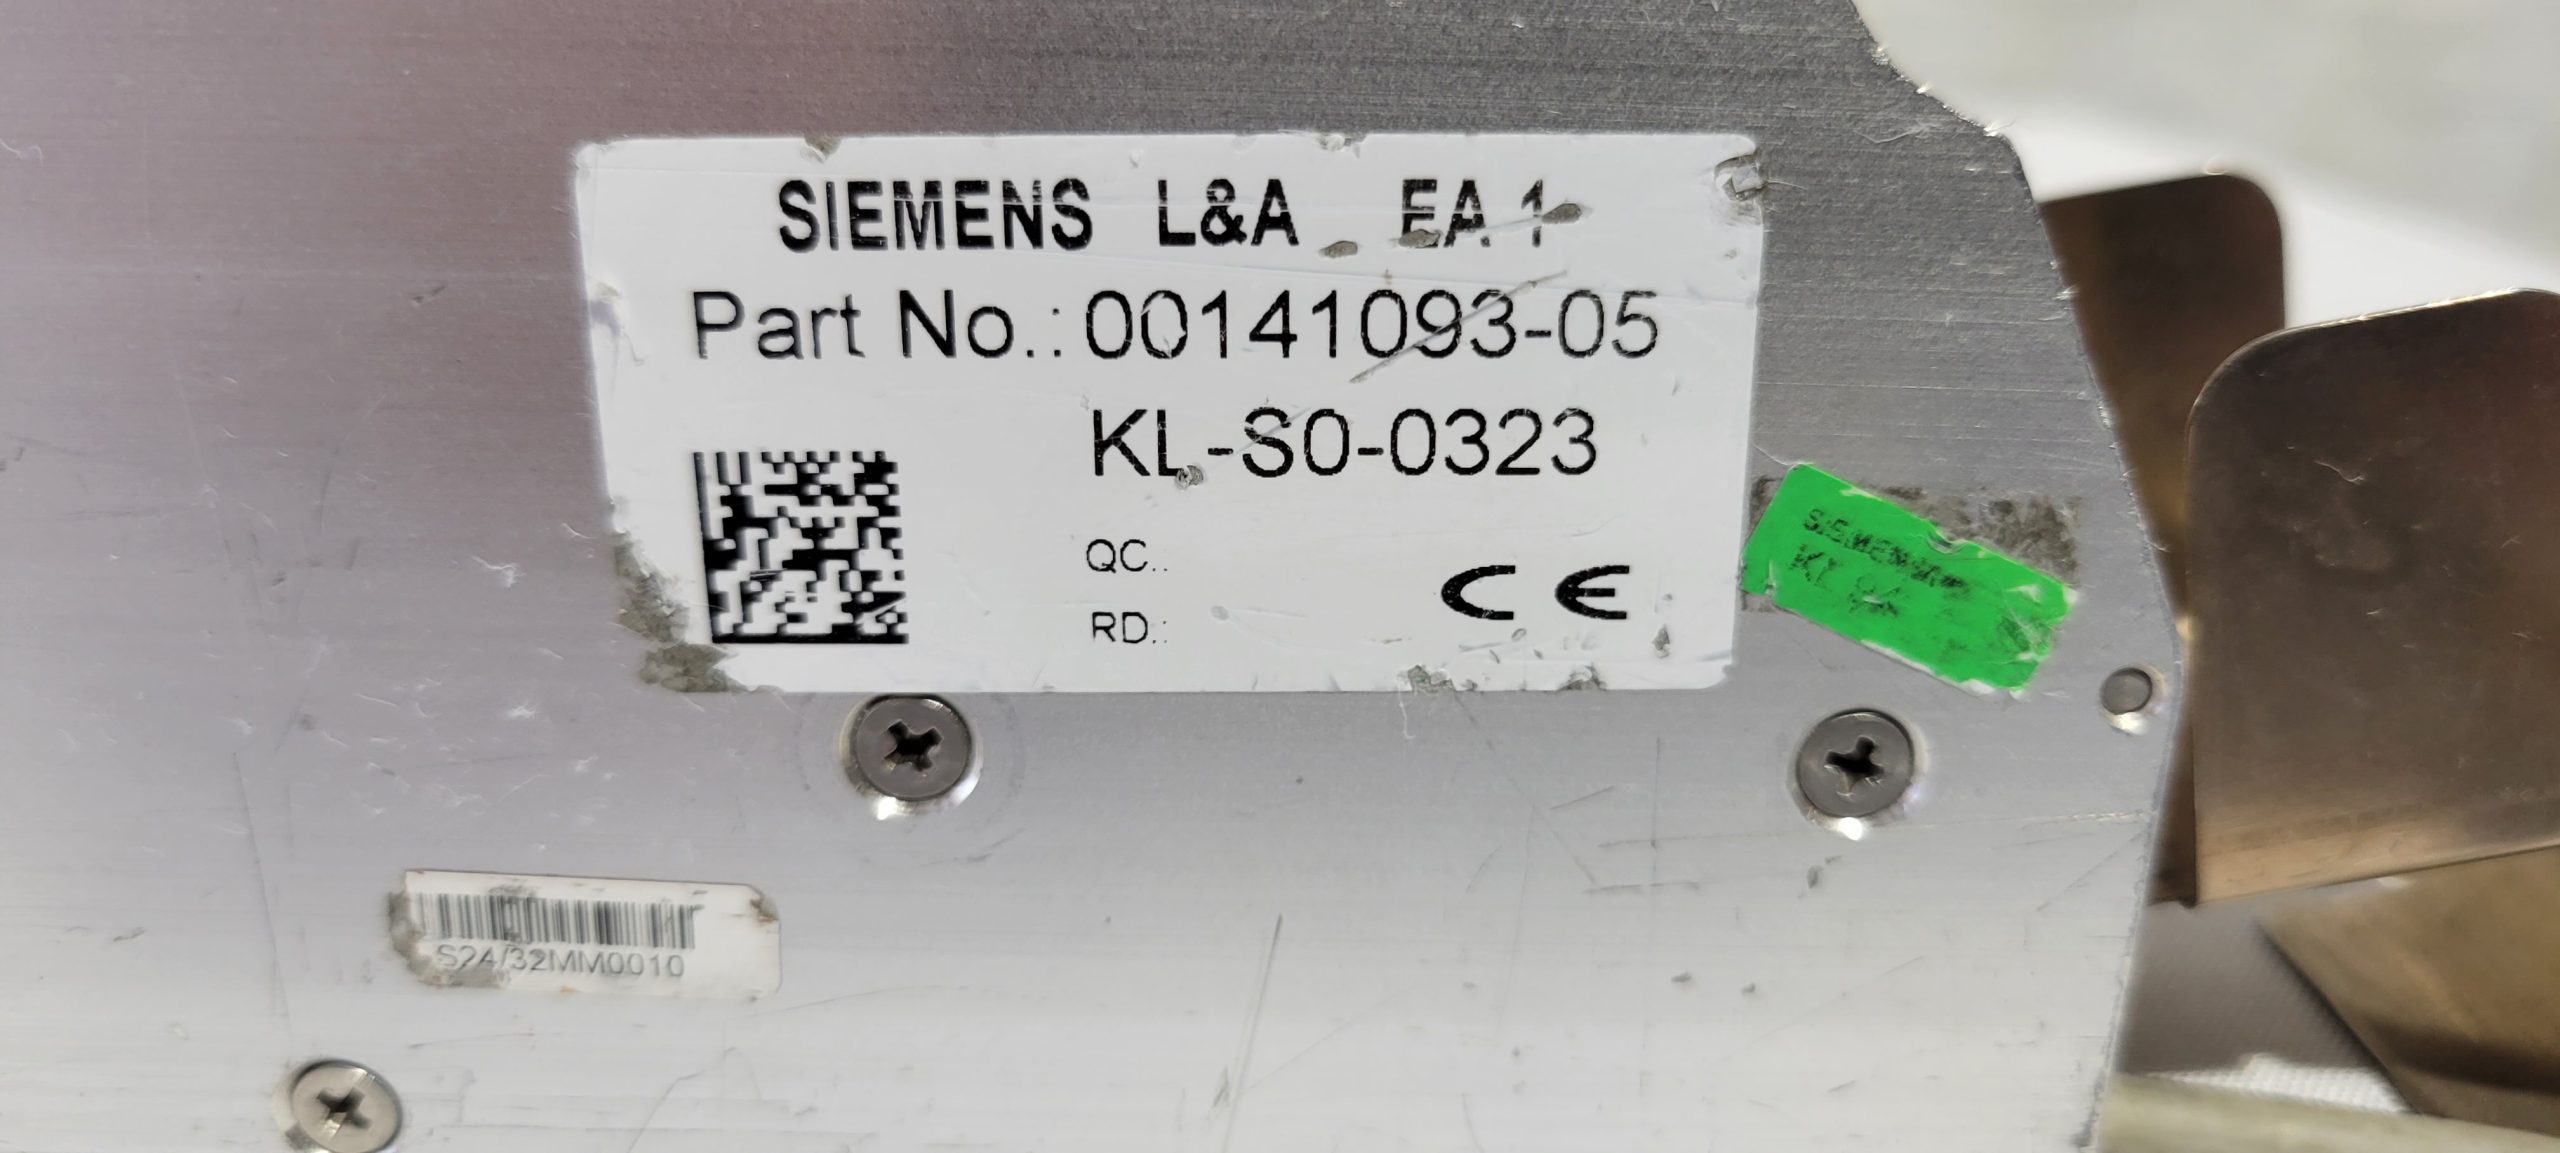 Siemens 24x32 mm Feeders -65682